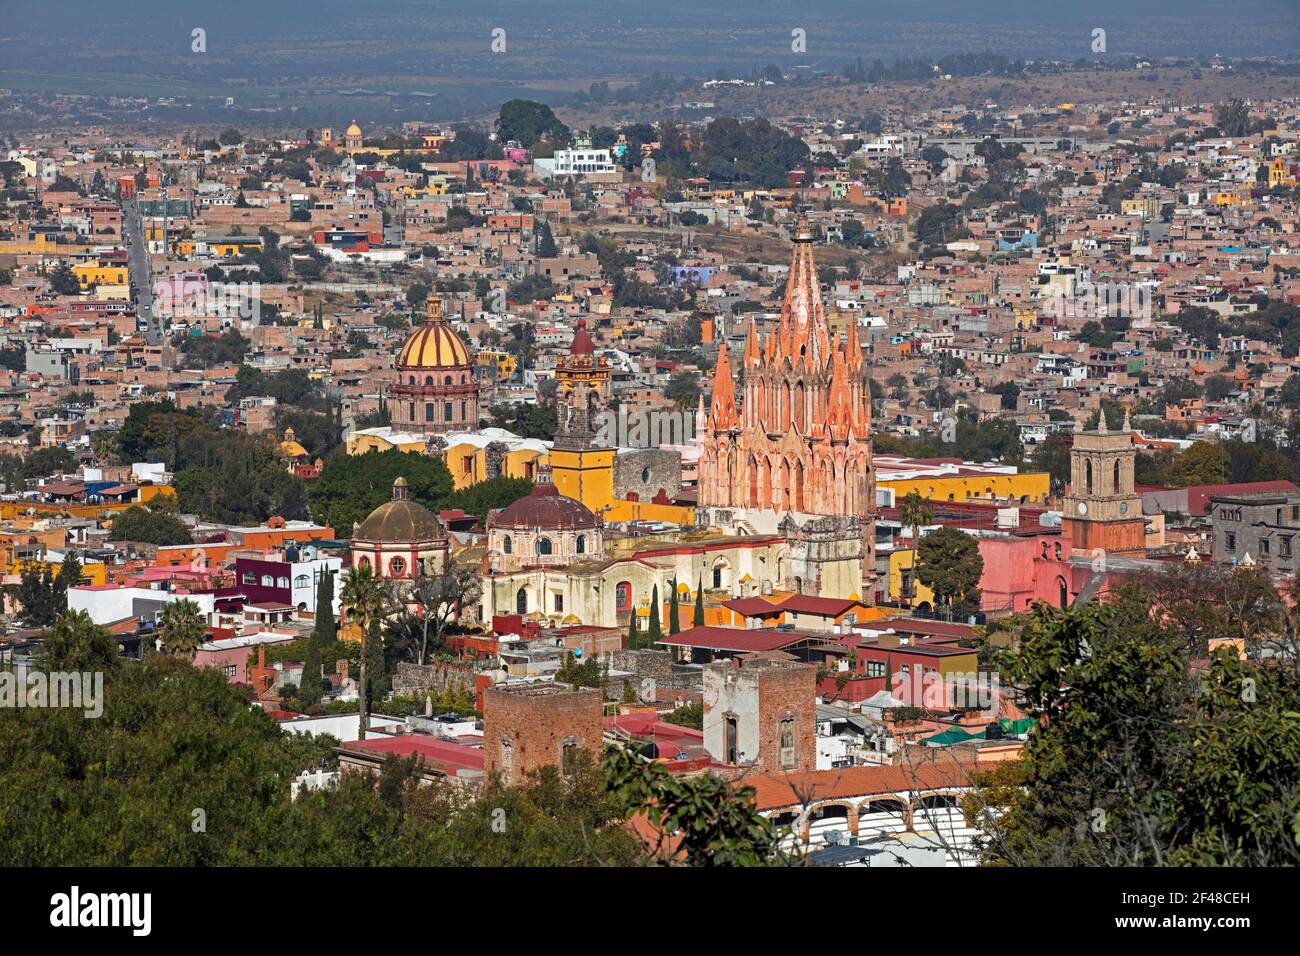 Luftaufnahme über die Stadt San Miguel de Allende und ihre neugotische Pfarrkirche La Parroquia de San Miguel Arcángel, Guanajuato, Zentralmexiko Stockfoto